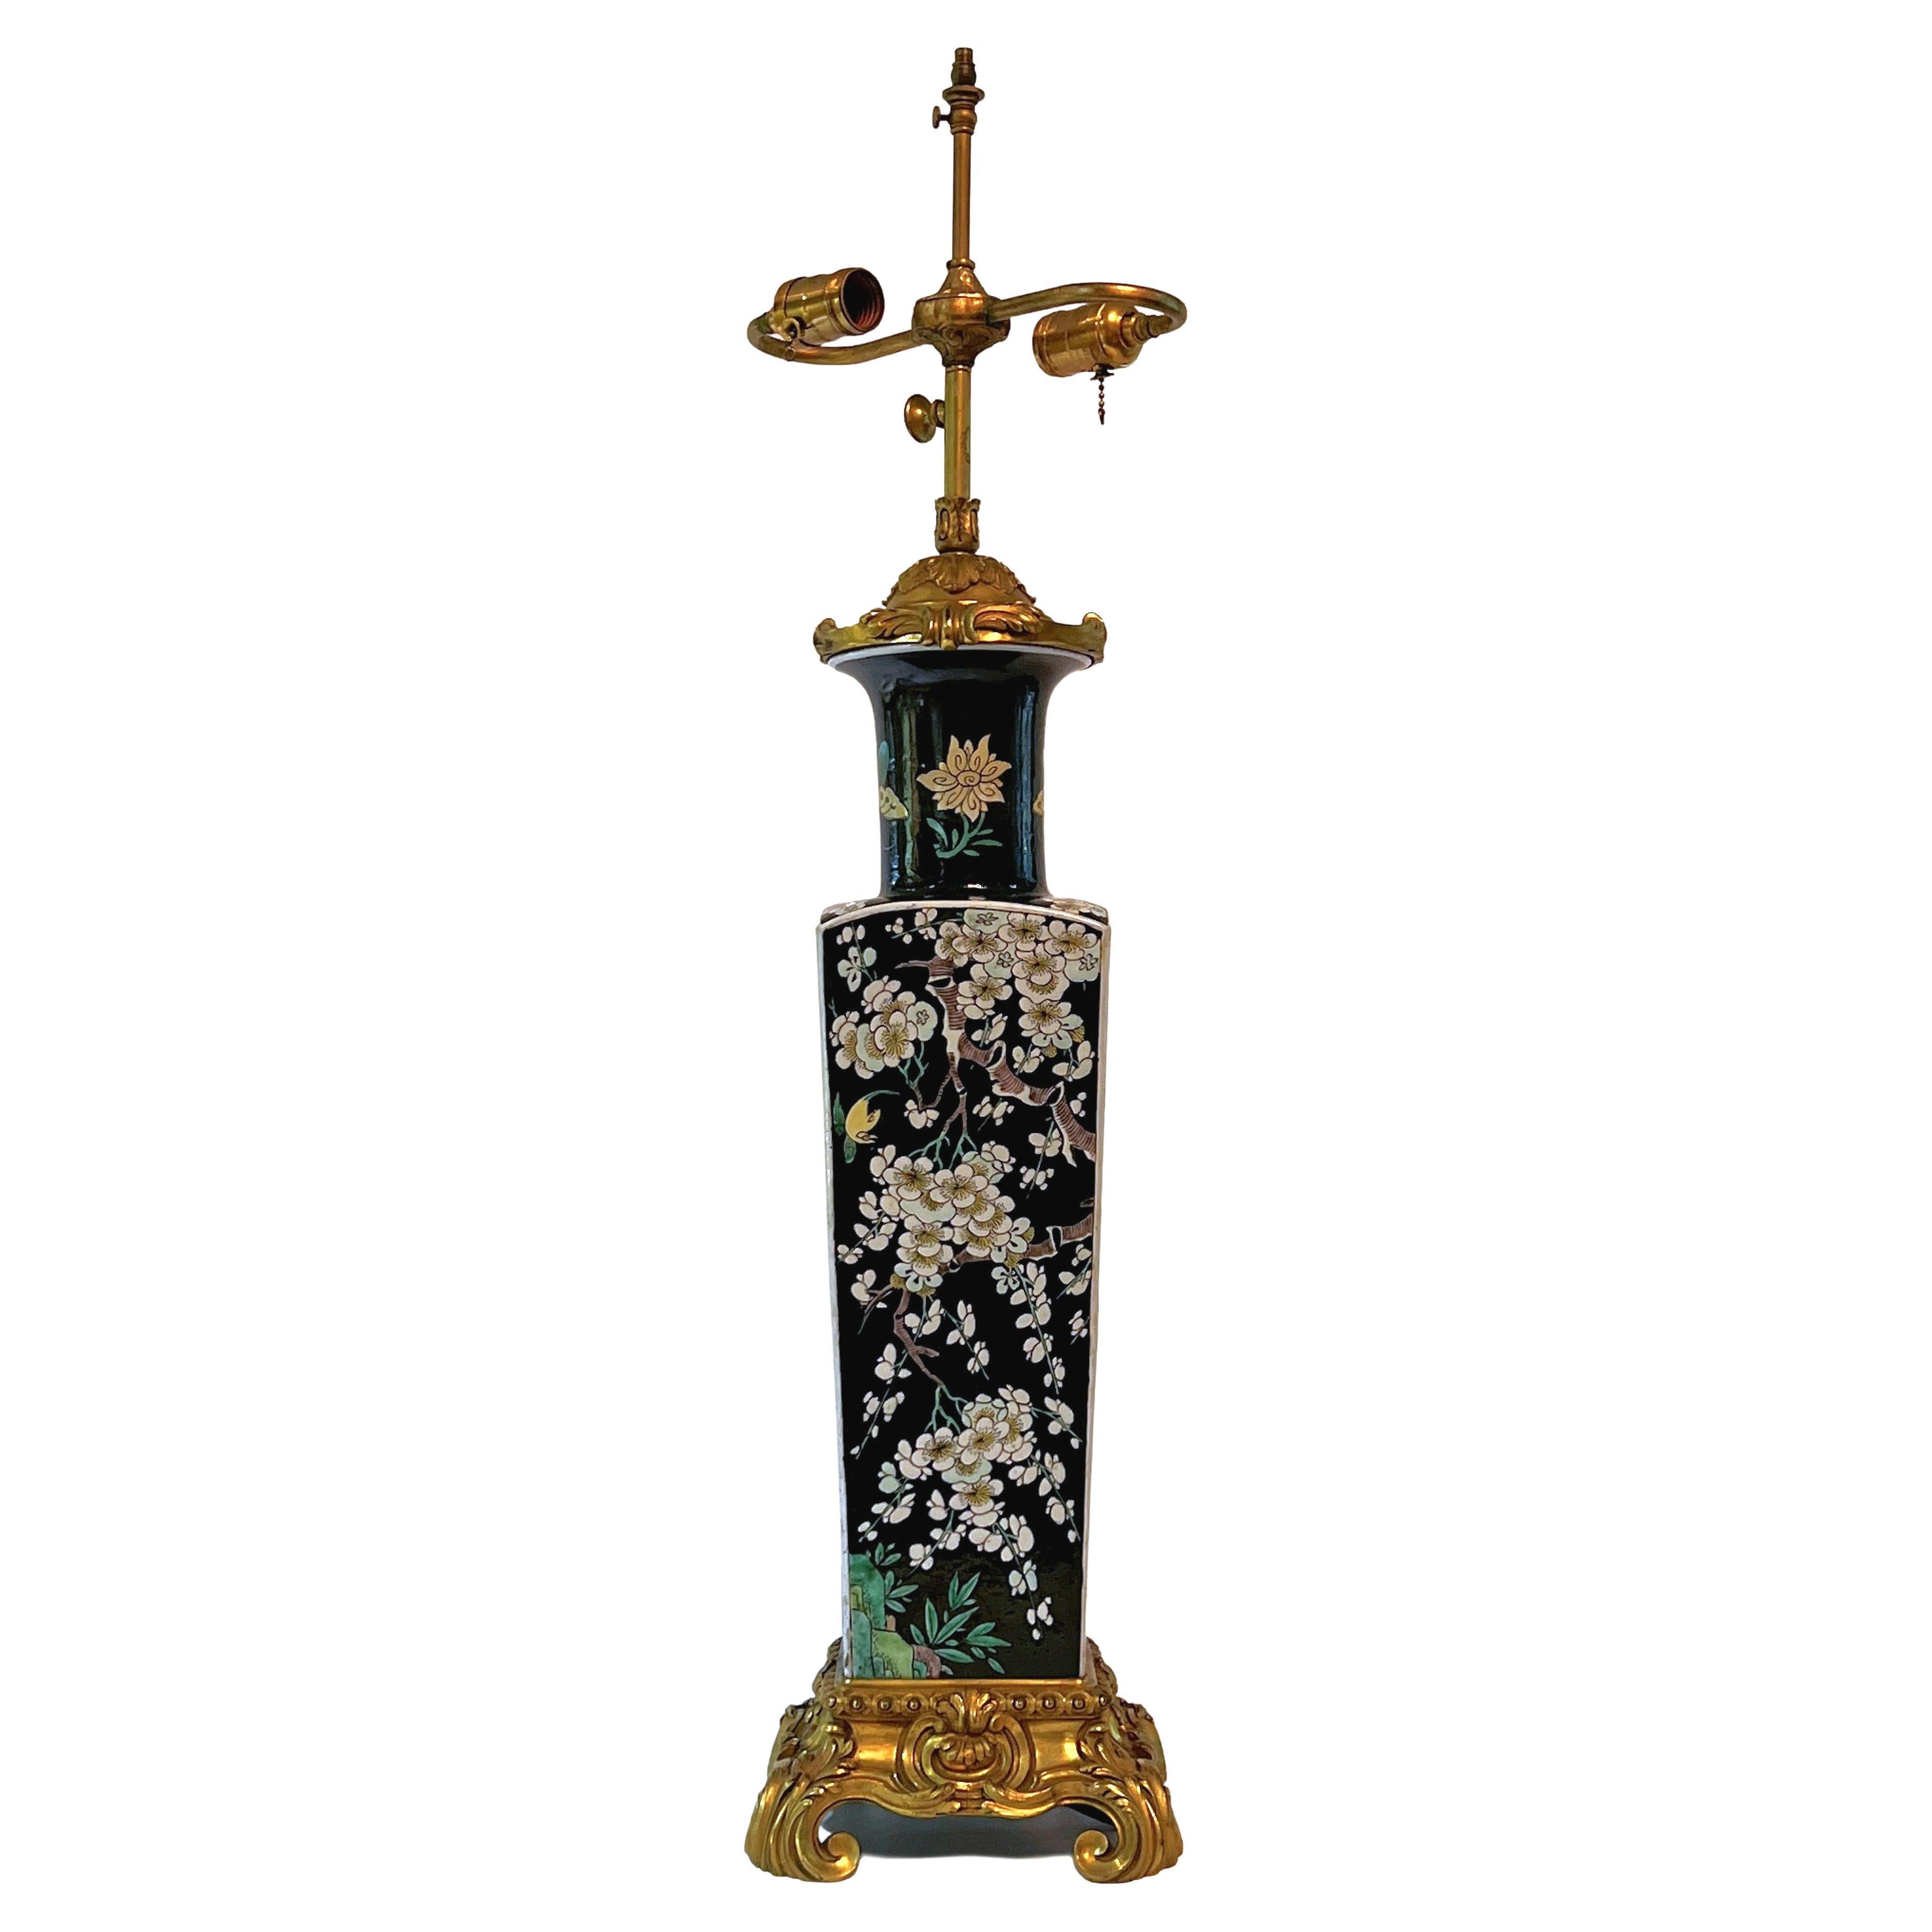 Chinesische Famille Noire-Tischlampe aus Porzellan mit Goldbronze-Bronze-Montierung